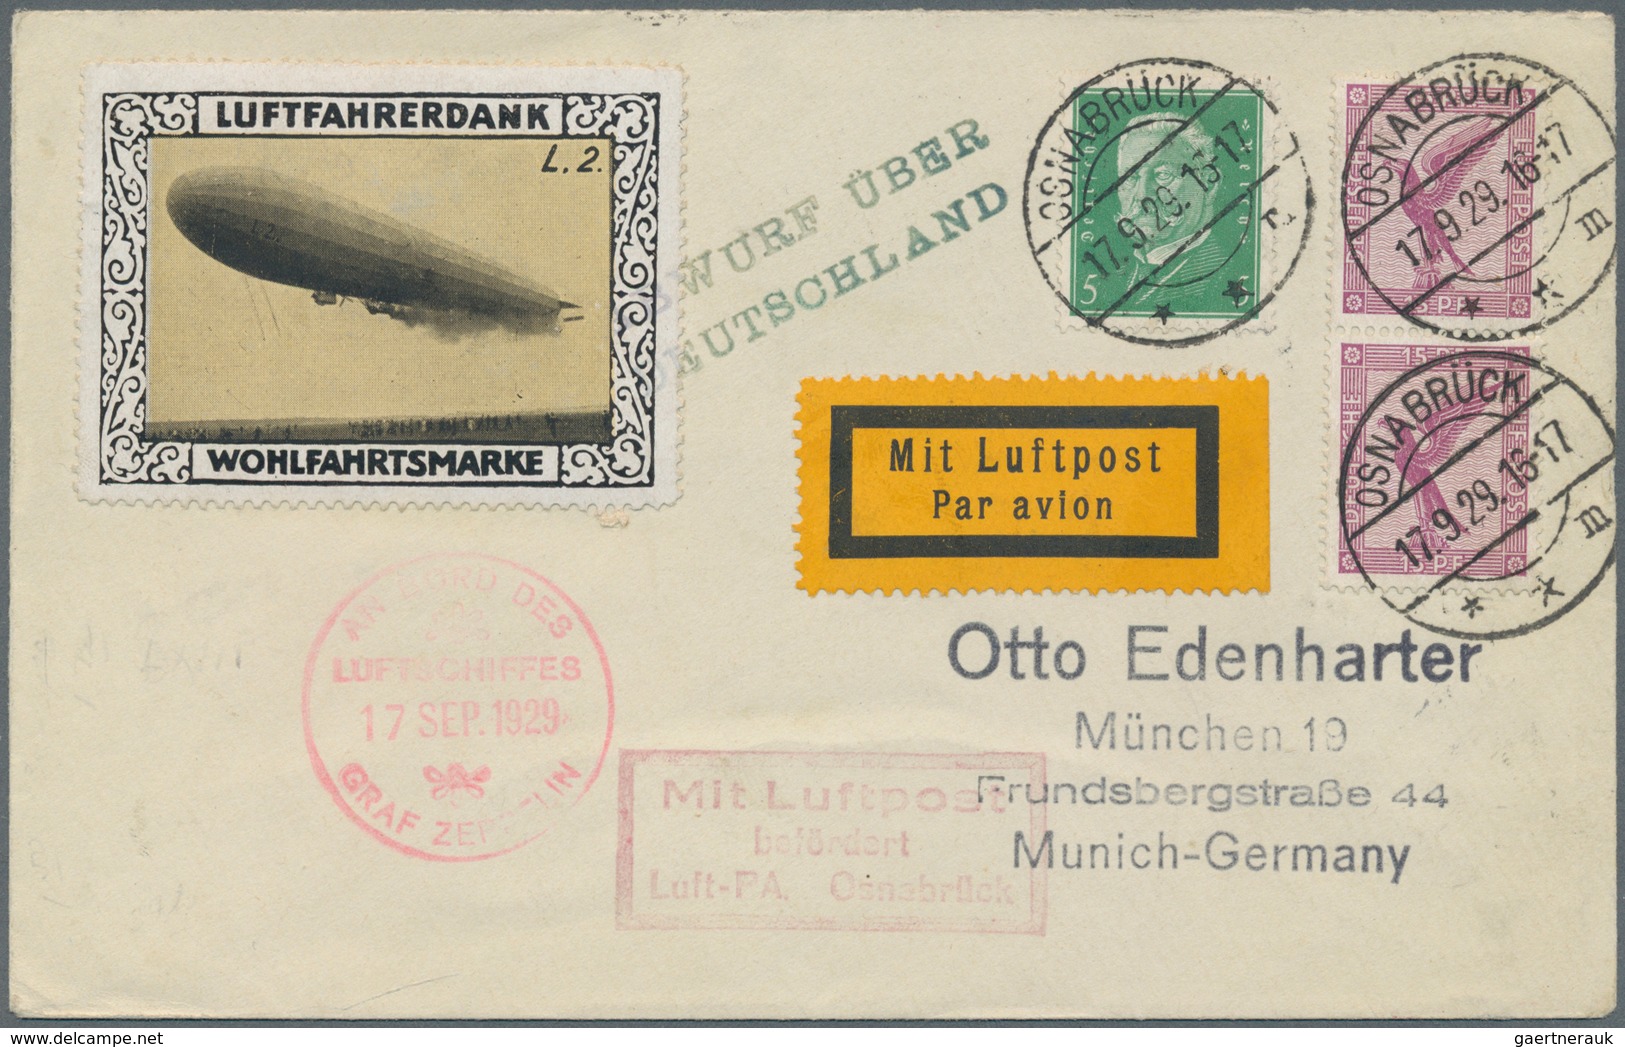 Zeppelinpost Deutschland: 1929. German Cover Flown On The Graf Zeppelin LZ127 Airship's 1929 Deutsch - Luft- Und Zeppelinpost